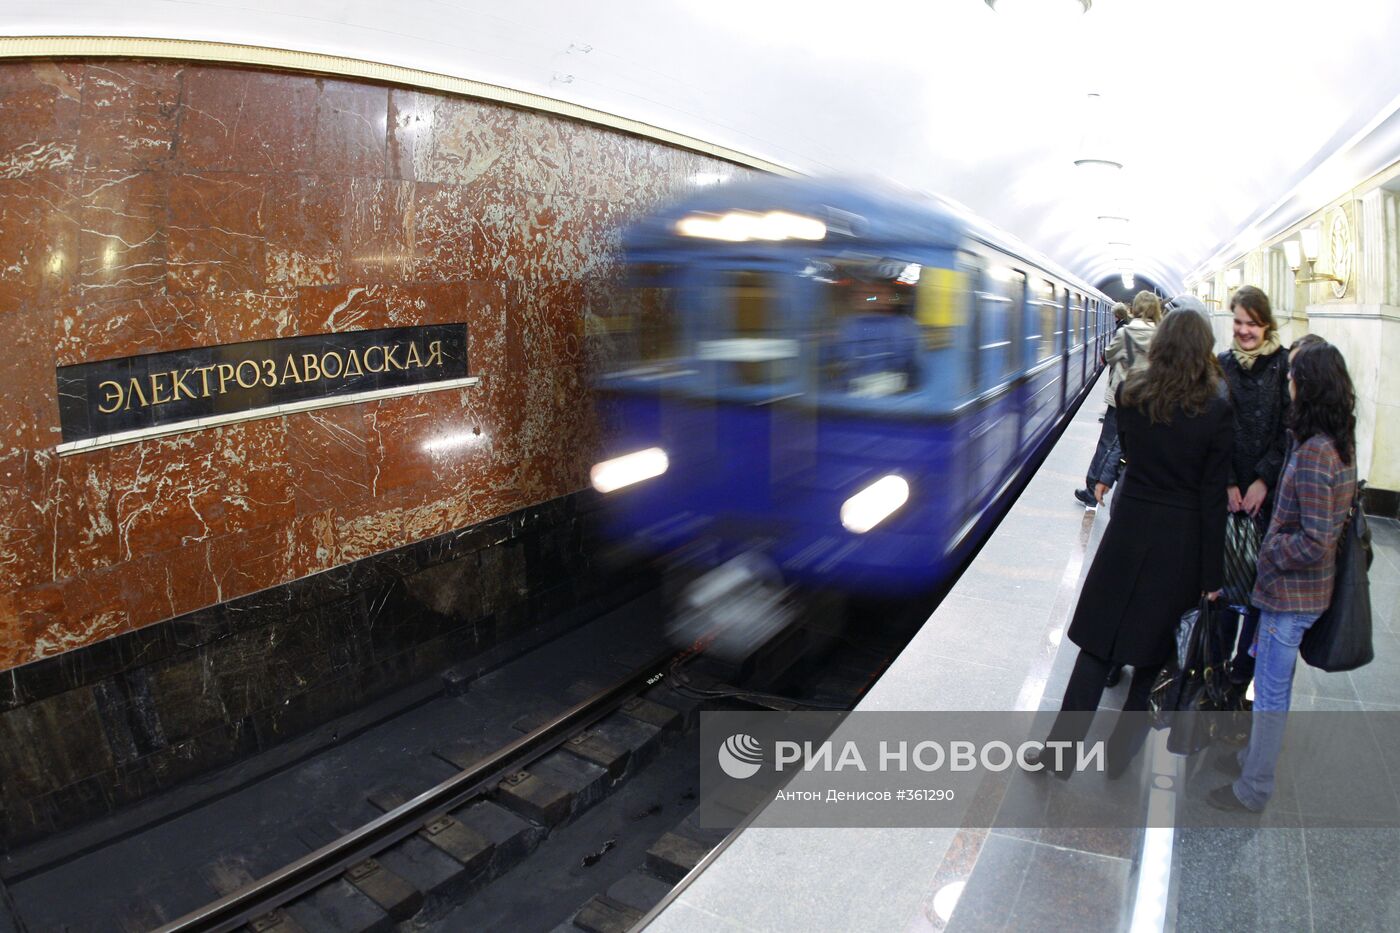 Станция метро "Электрозаводская" открыта после ремонта